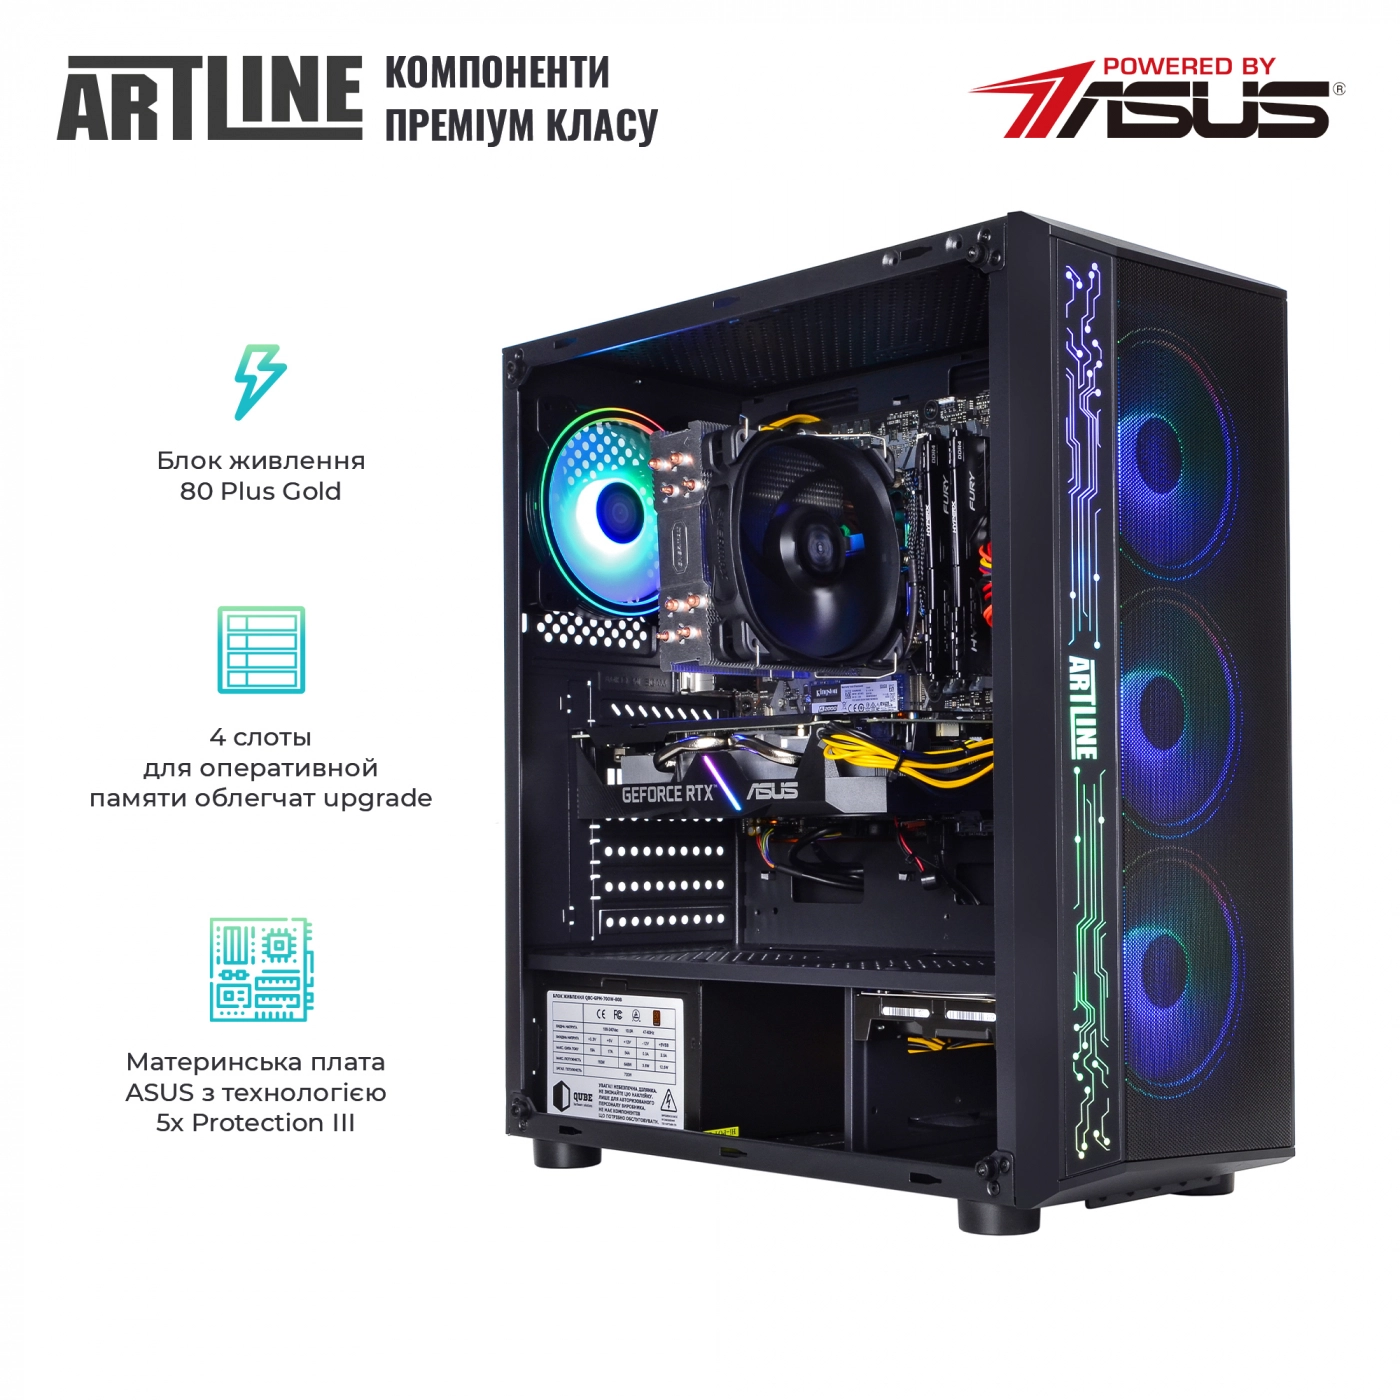 Купить Компьютер ARTLINE Gaming X85v21 - фото 2